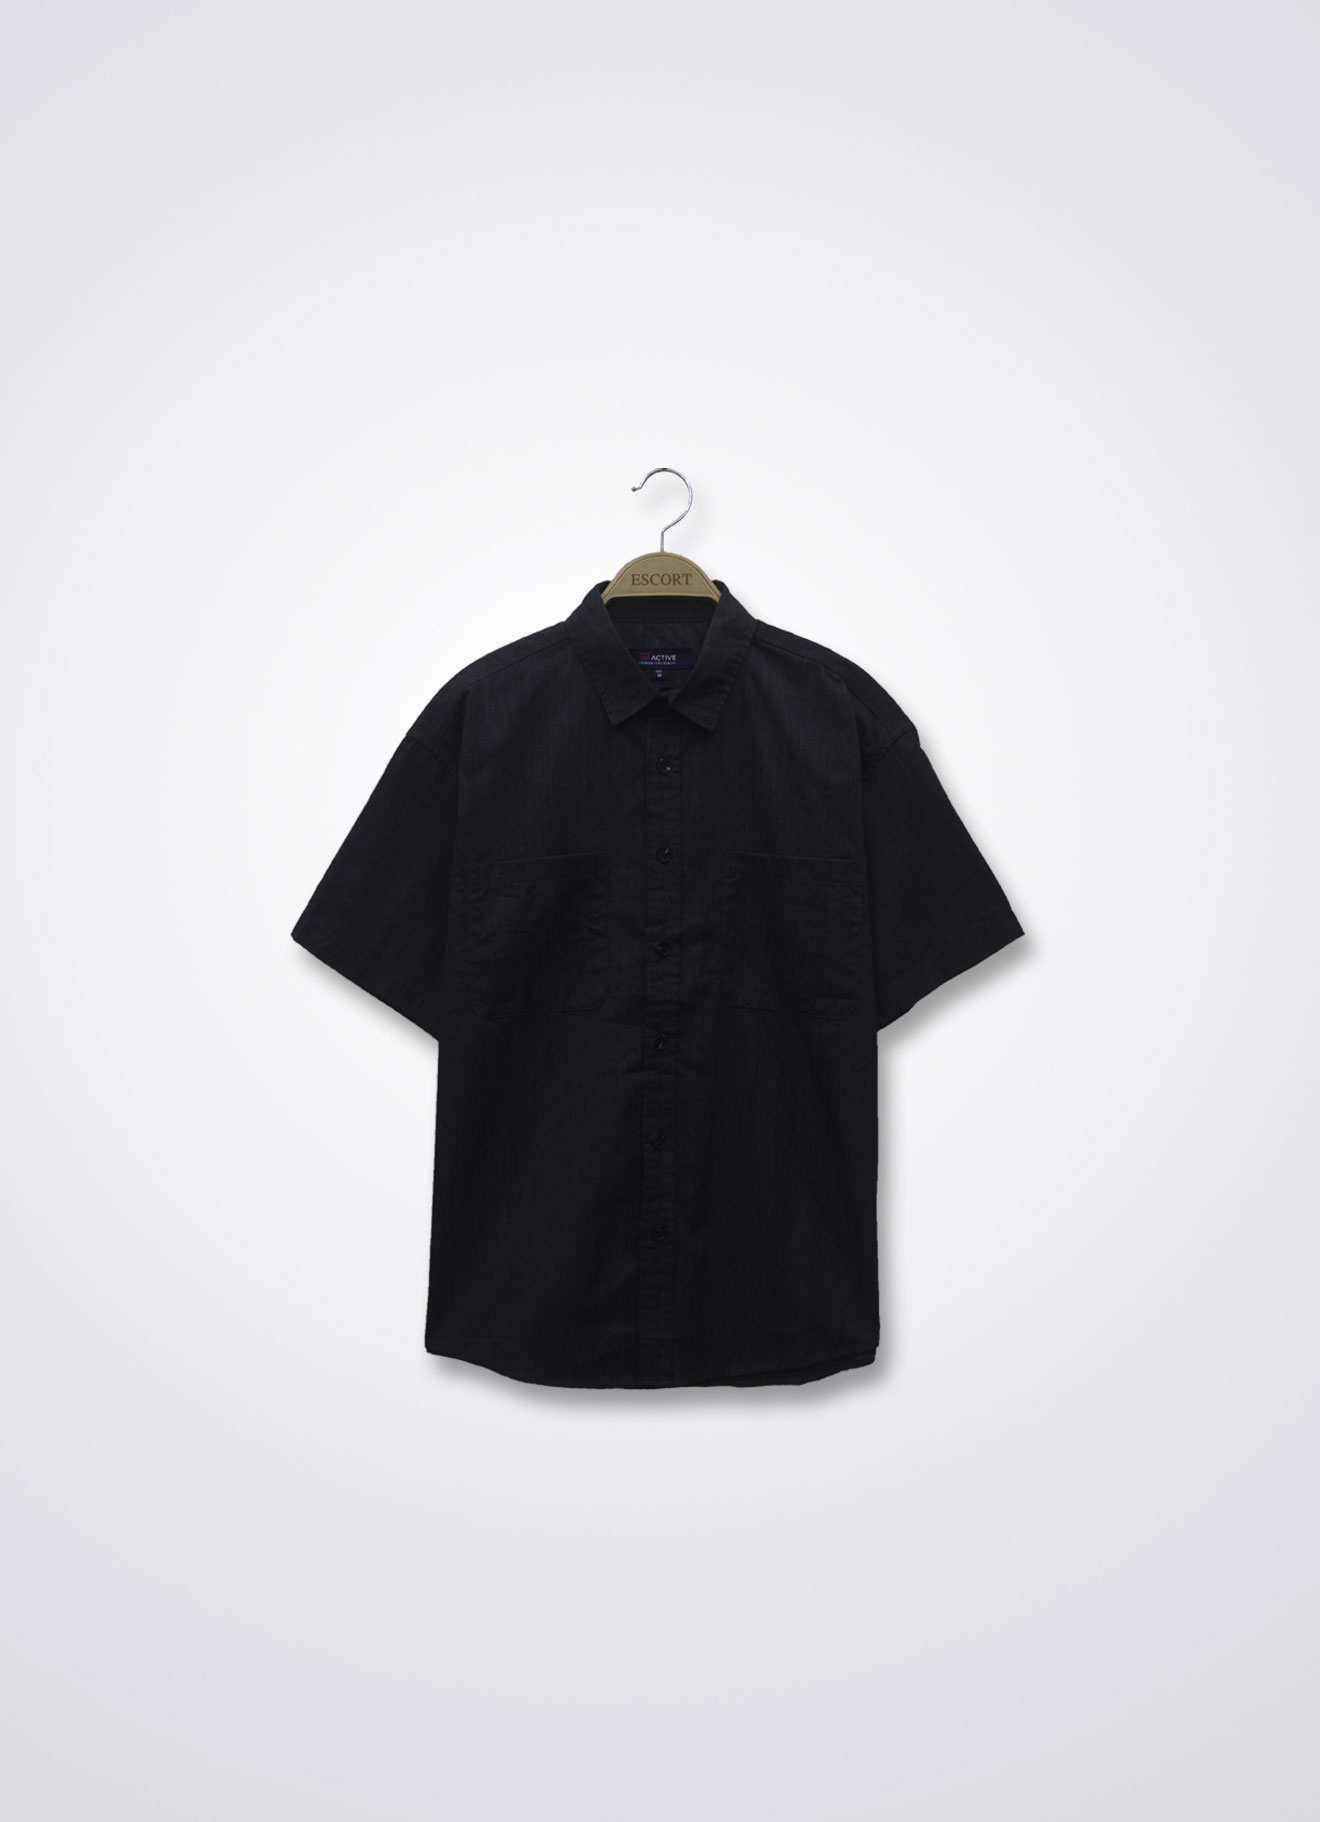 Black by Shirt